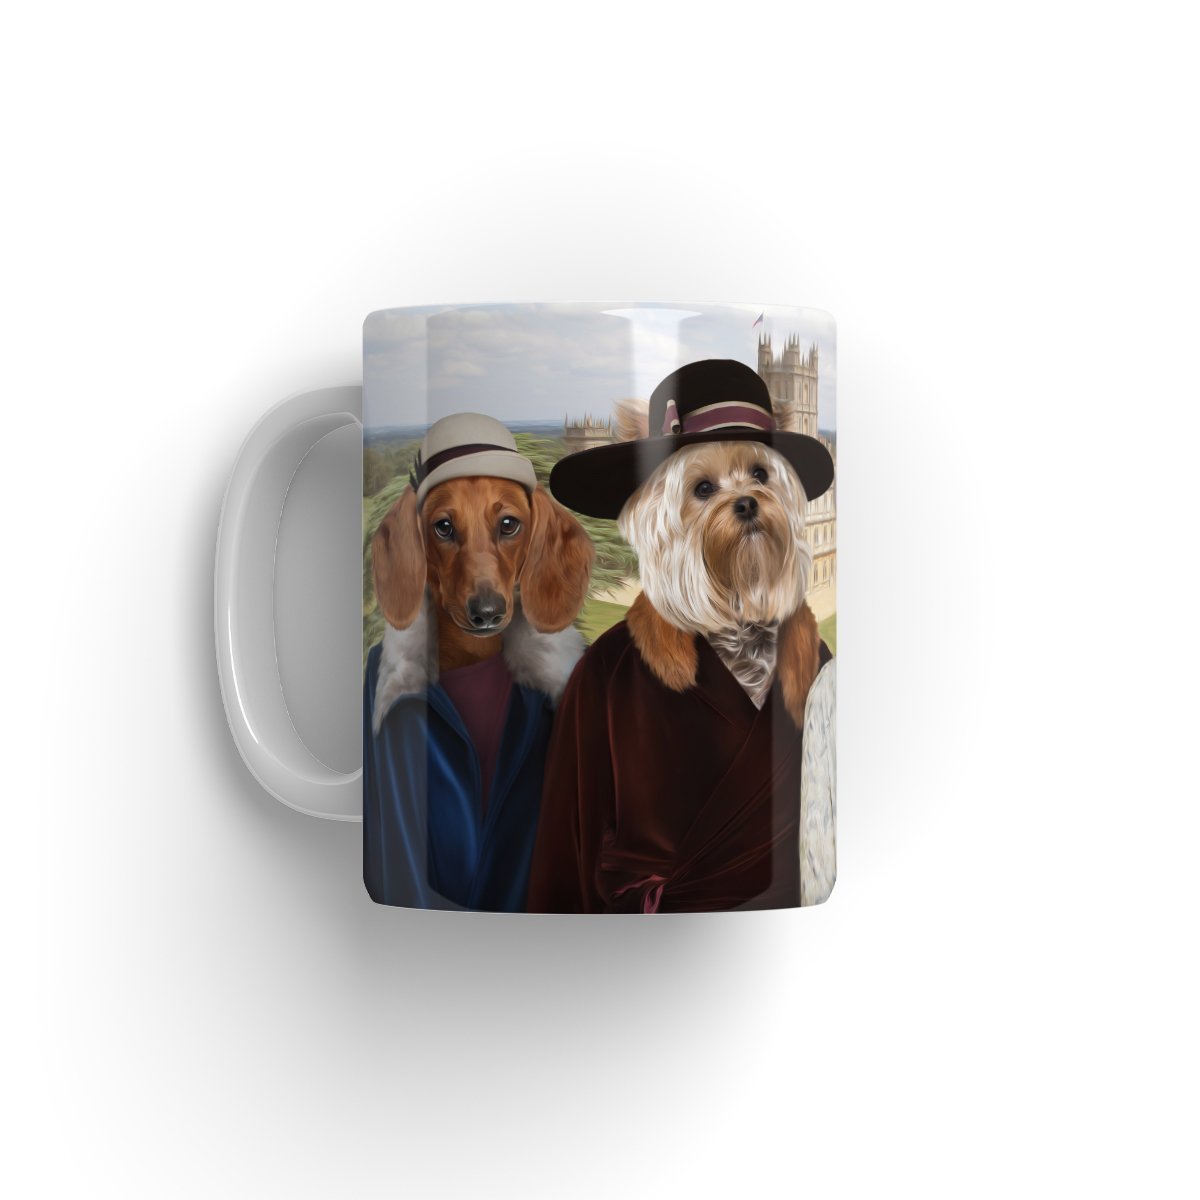 Downton Ladies: Custom 3 Pet Mug - Paw & Glory - #pet portraits# - #dog portraits# - #pet portraits uk#pawandglory, pet art Mug,custom pet mugs, mug with dog picture, dog photo mug, mug for dog, personalized dog and owner mug